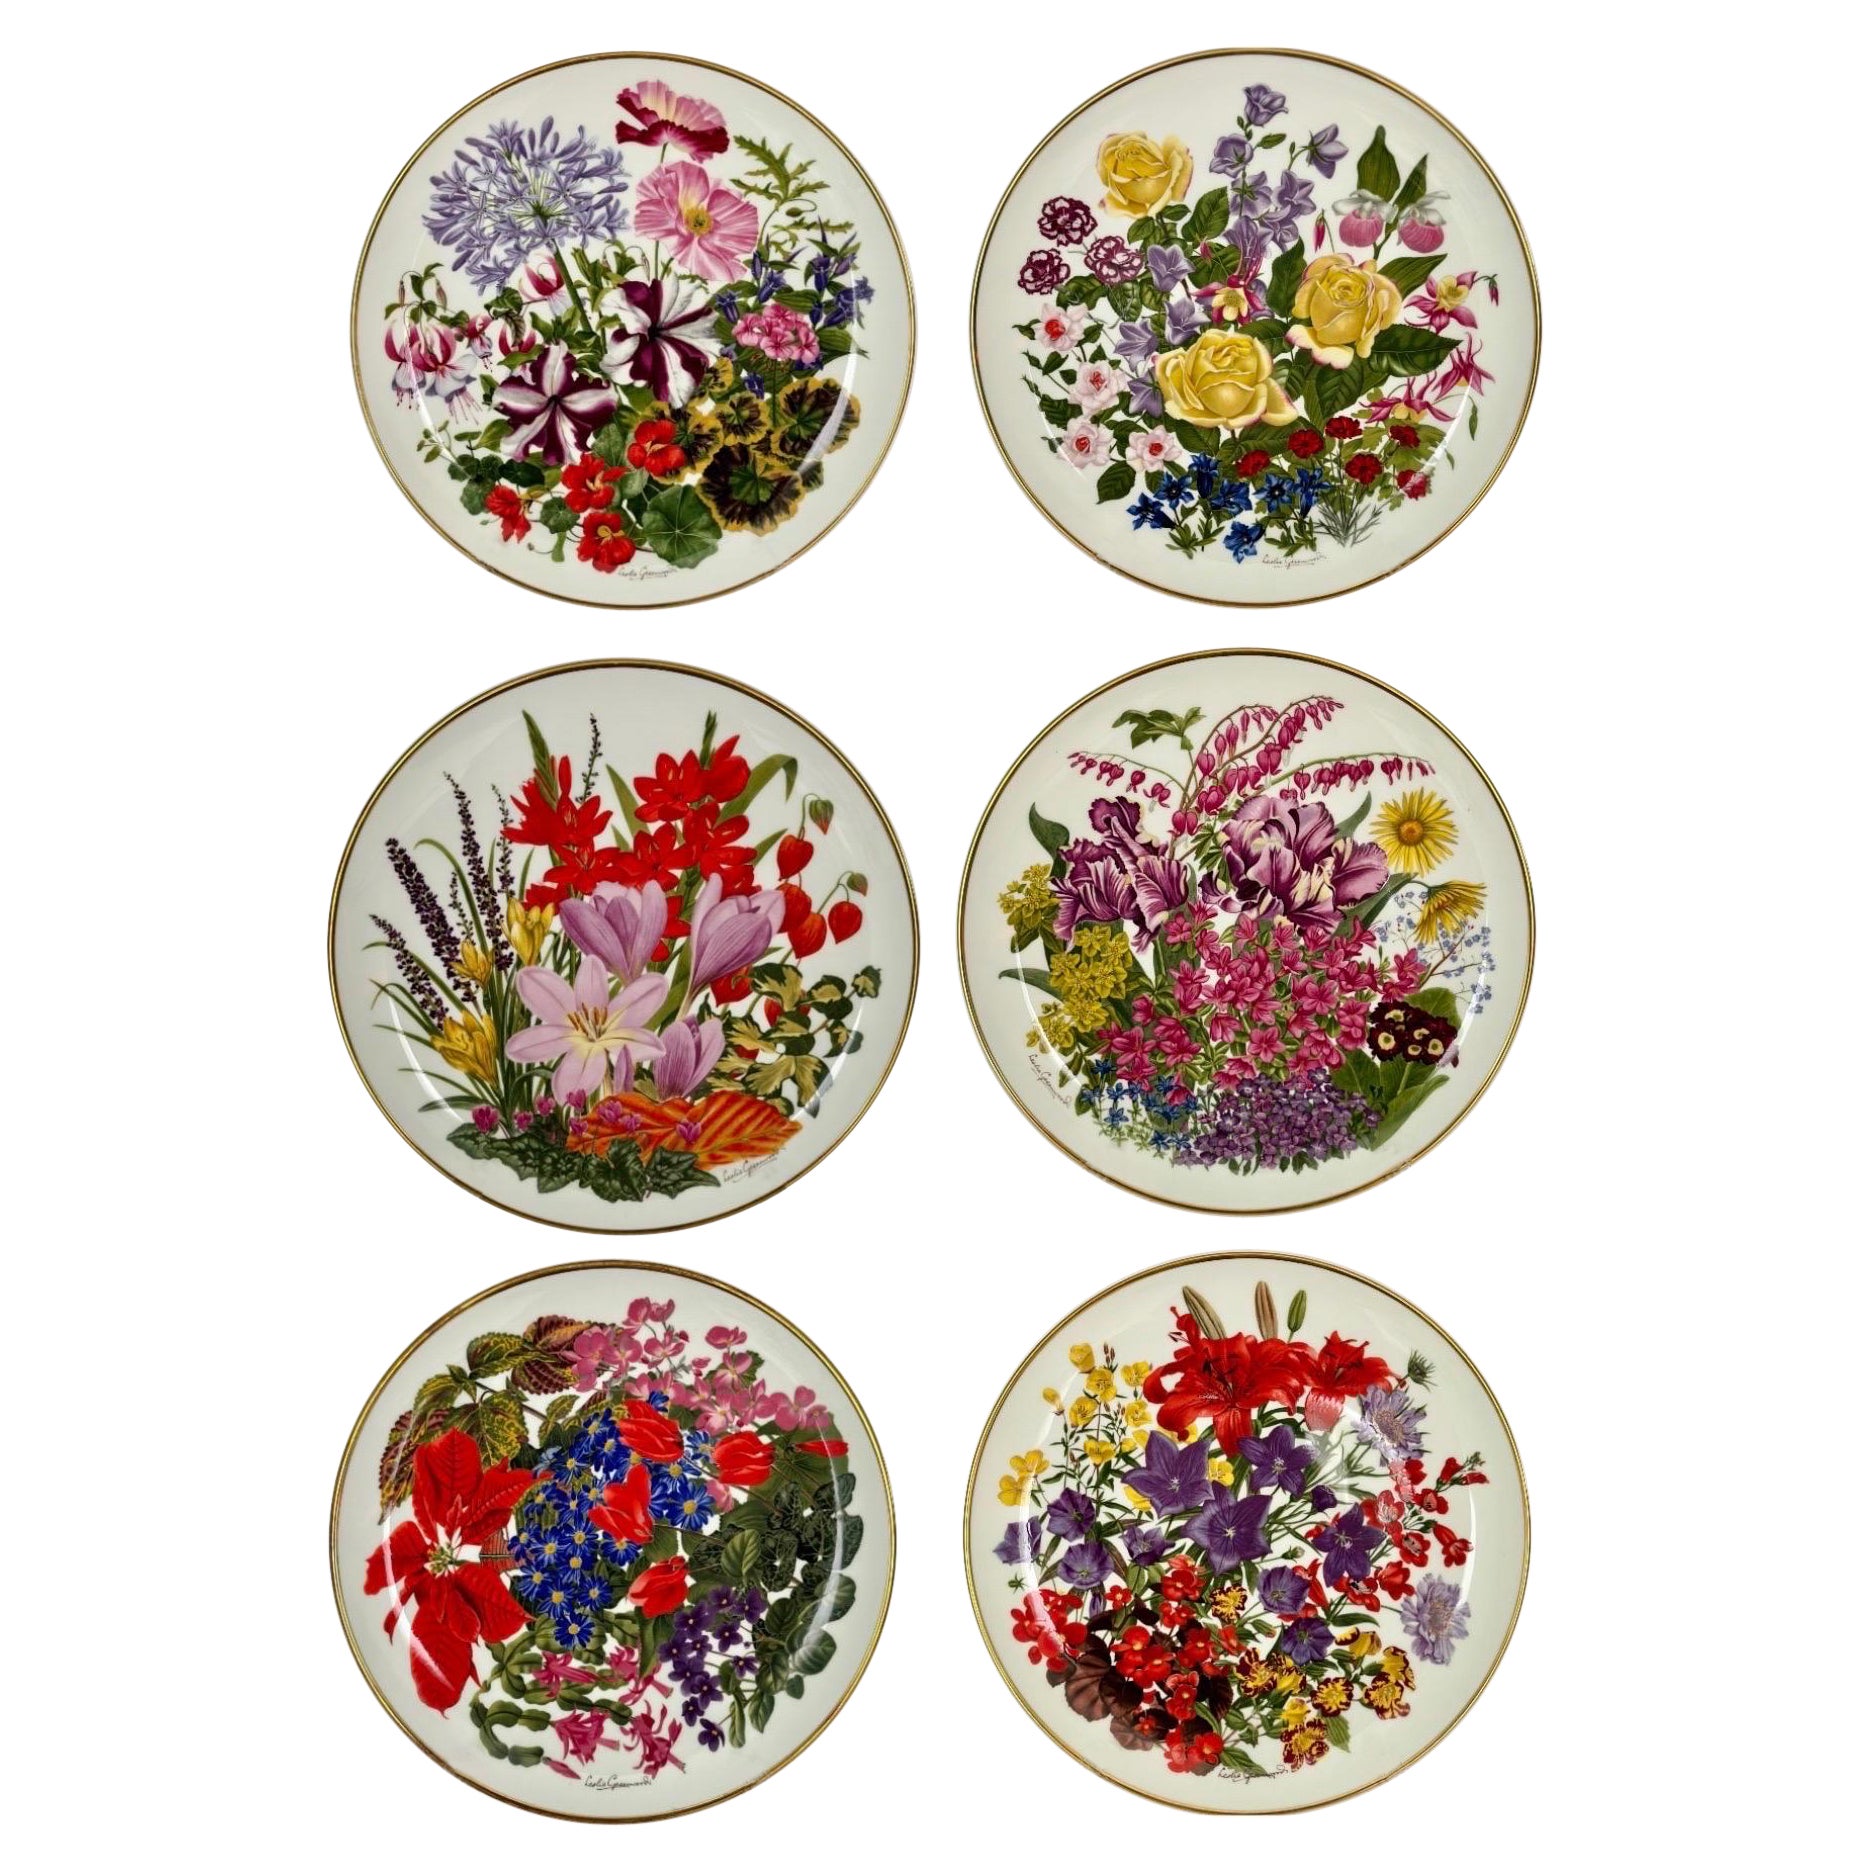 1970 Angleterre Wedgewood Assiettes à fleurs en porcelaine - Lot de 6 